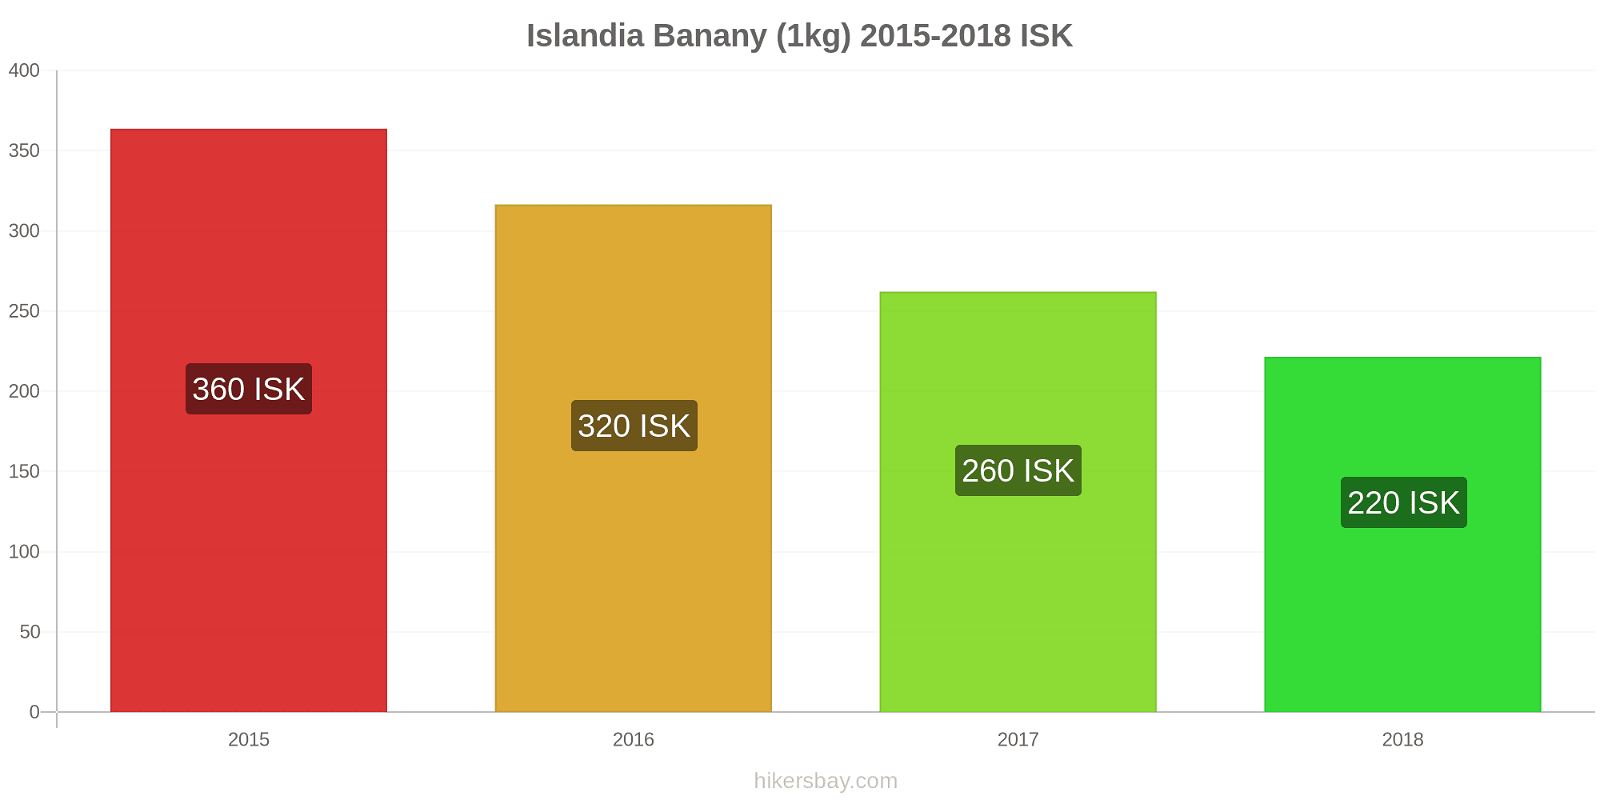 Islandia zmiany cen Banany (1kg) hikersbay.com